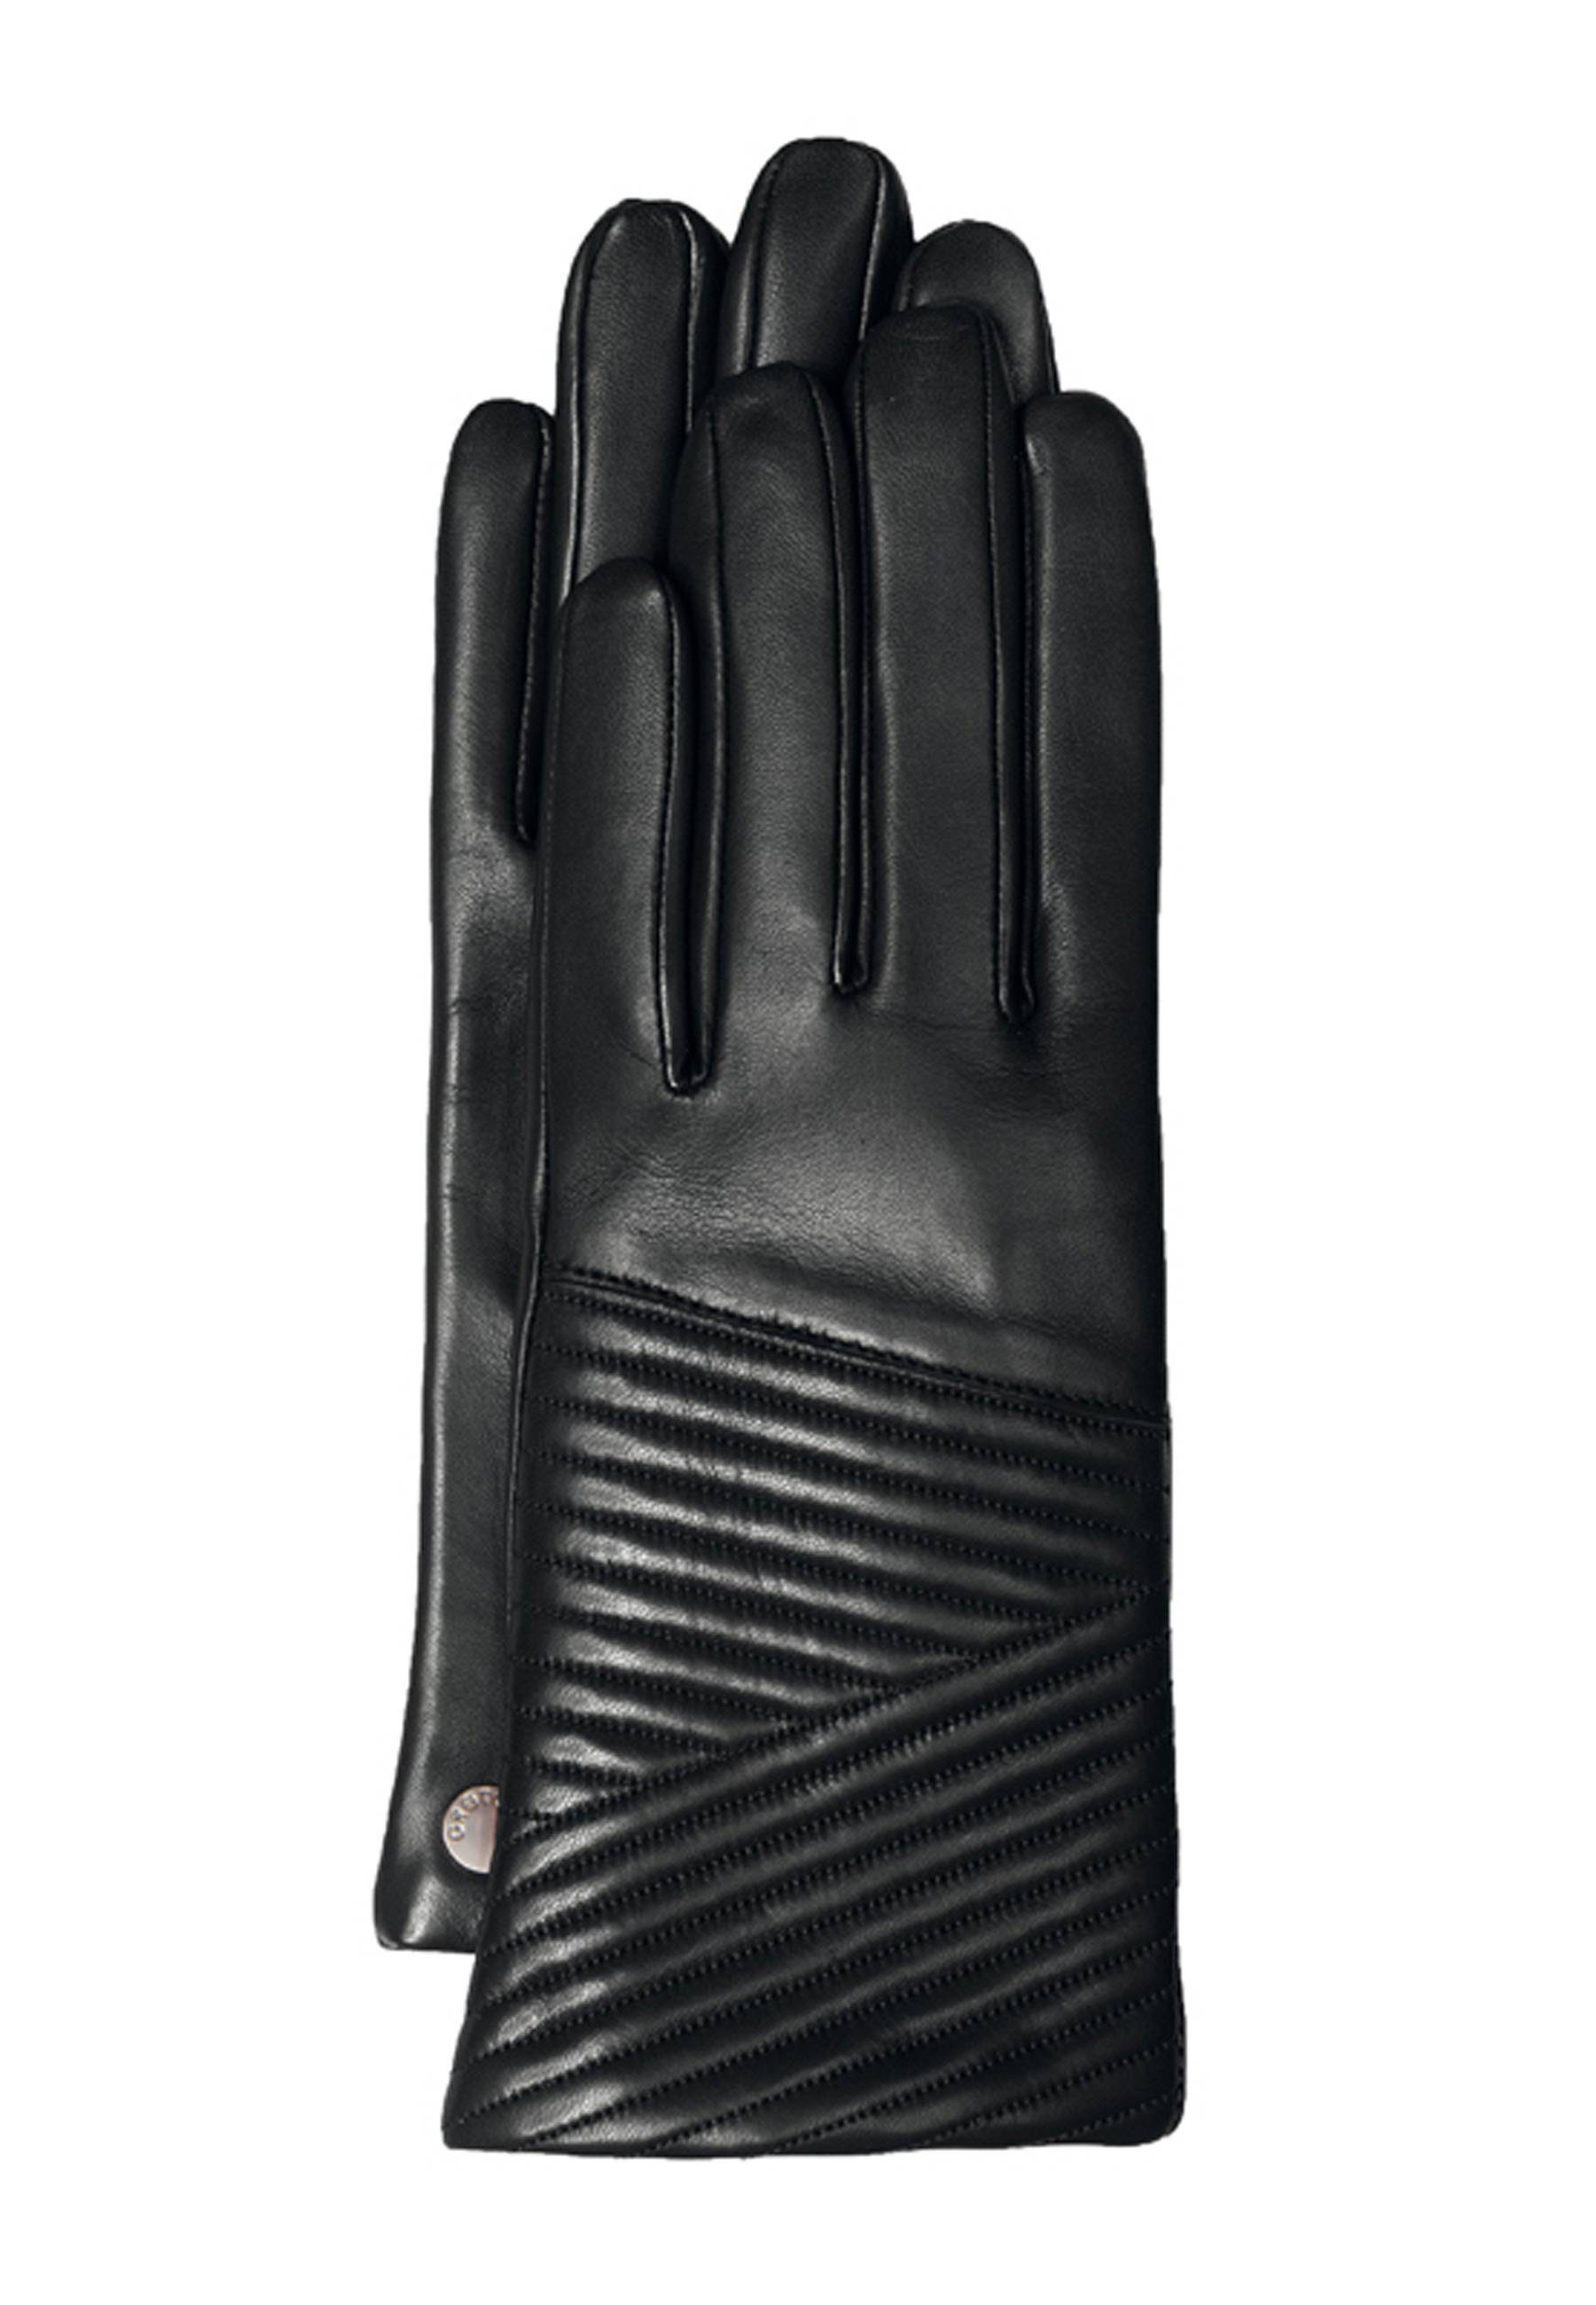 GRETCHEN Stepp-Details mit Gloves Lederhandschuhe Two trendigen Quilted